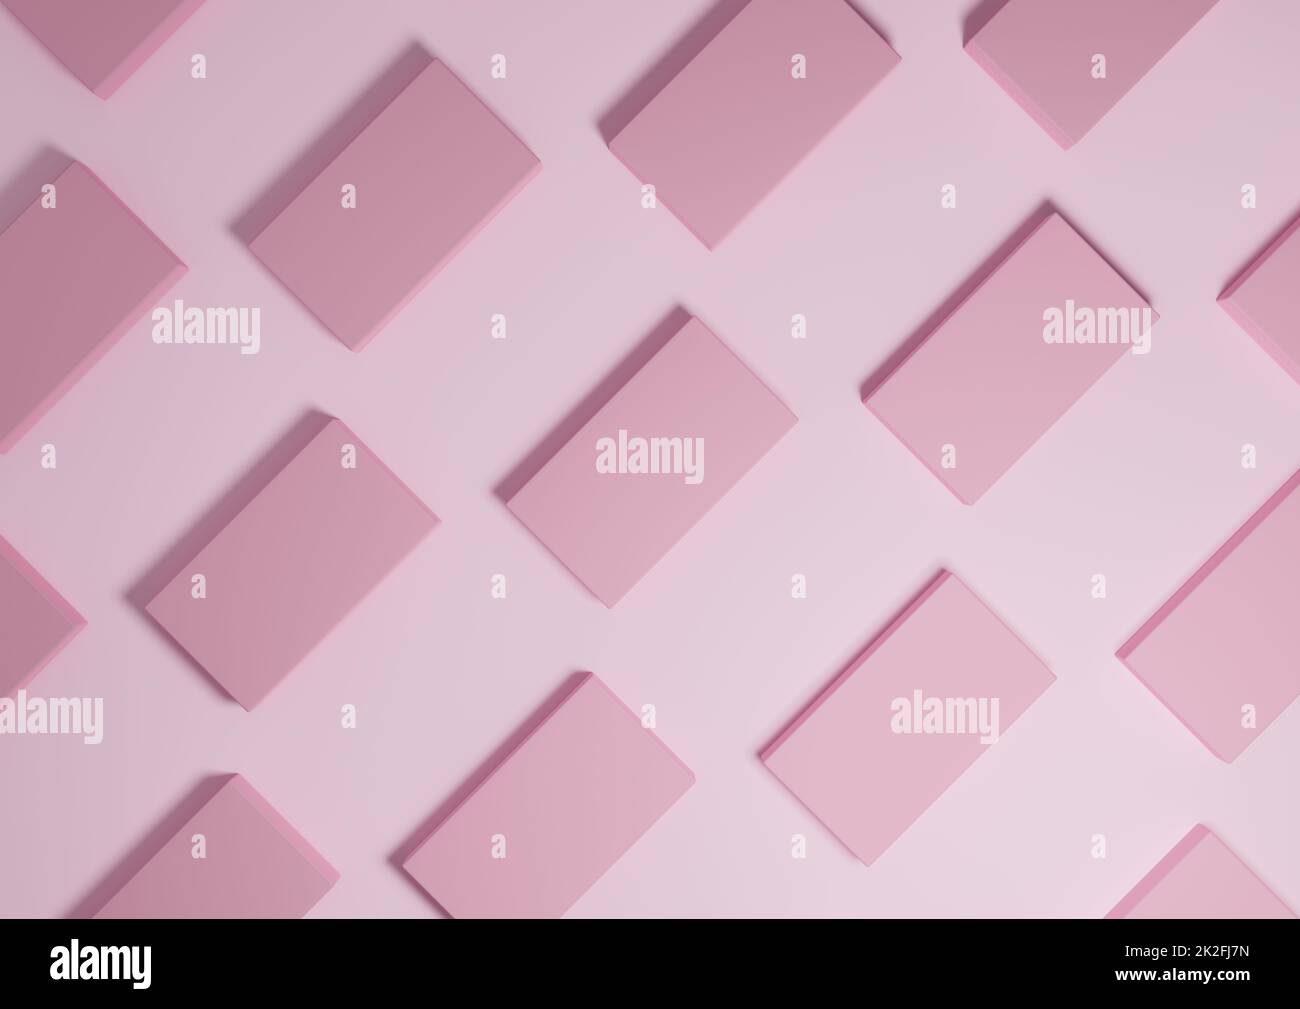 Chiaro, pastello, rosa lavanda, 3D render minimal, semplice, moderno display piatto con vista dall'alto sullo sfondo con supporti quadrati ripetitivi in un motivo Foto Stock